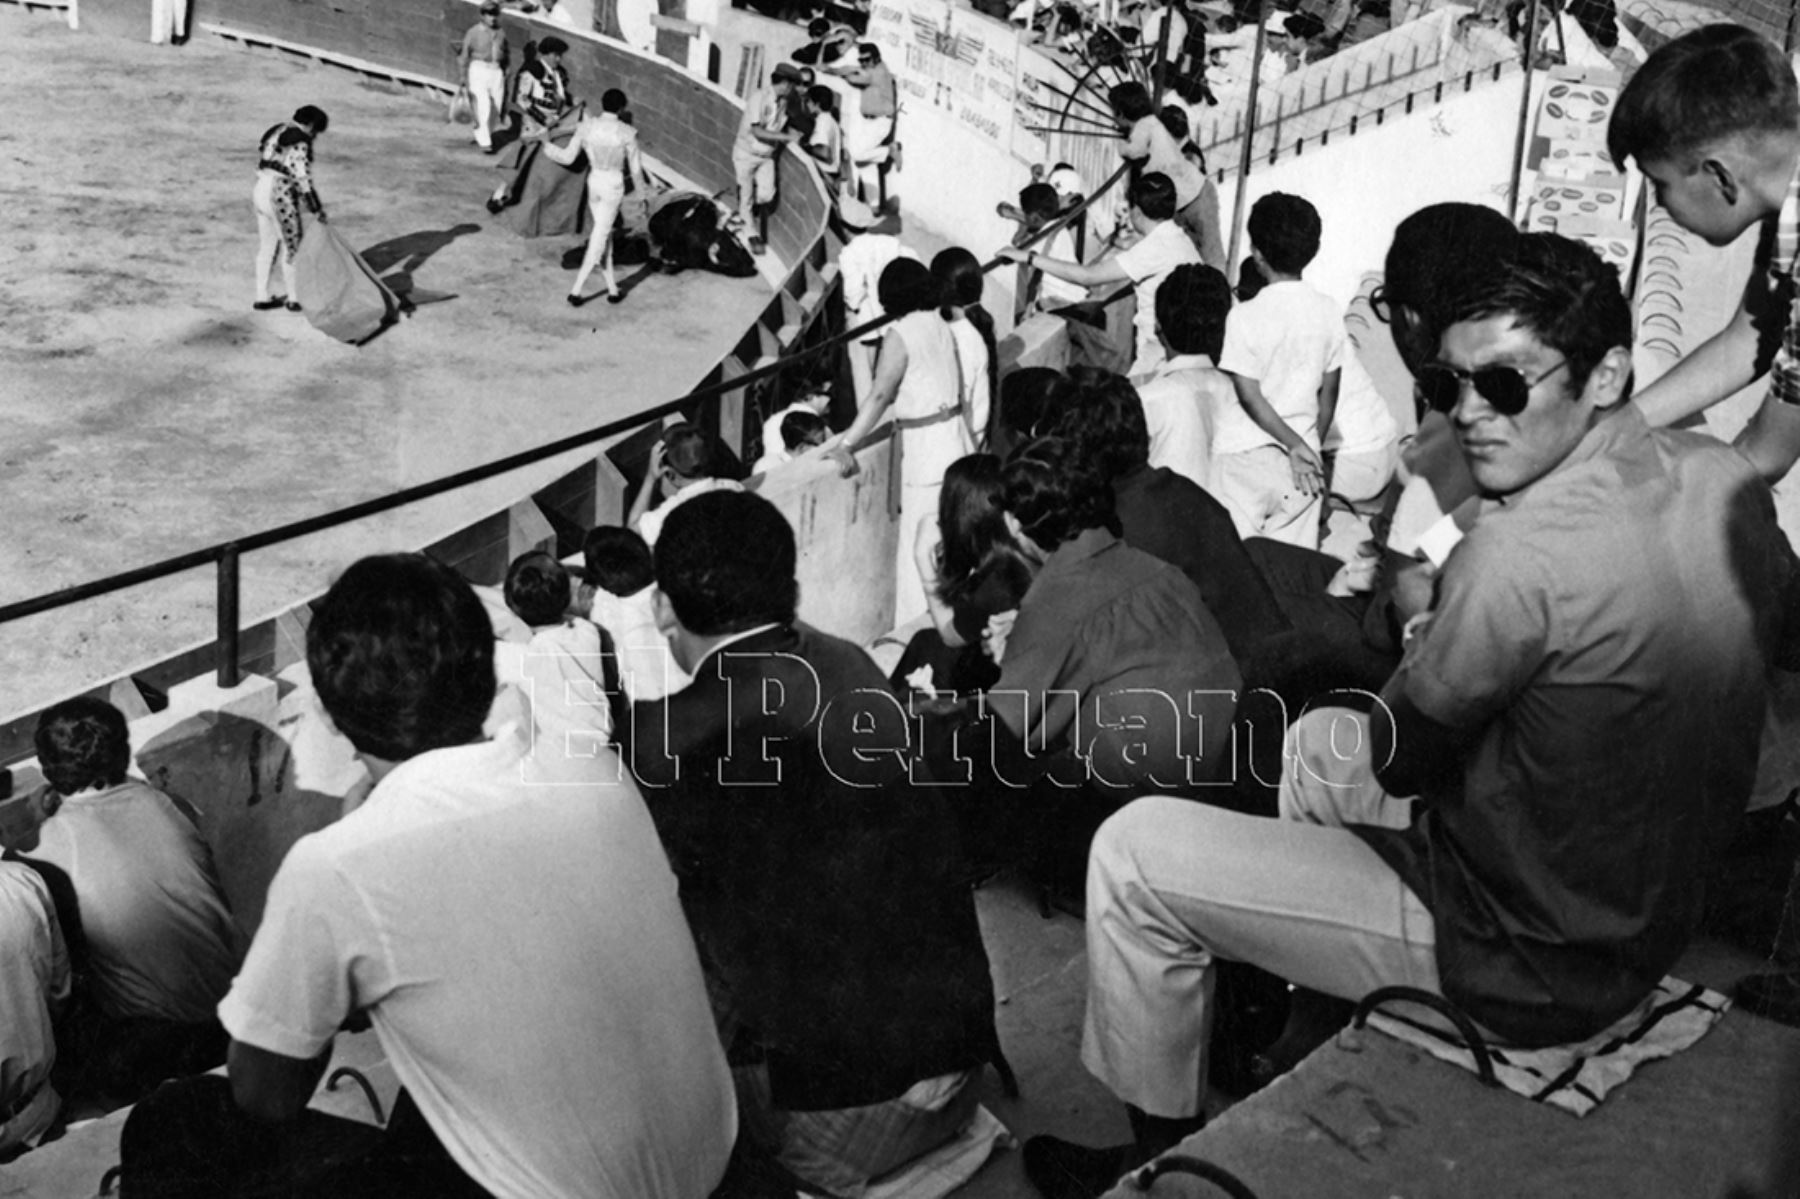 León, México - 20 mayo 1970 / Hugo Sotil y otros seleccionados nacionales presenciaron una corrida de toros en la Plaza de León, a pocos días debut  de la selección peruana de fútbol en el mundial de México 70. Foto: Archivo Histórico de EL PERUANO